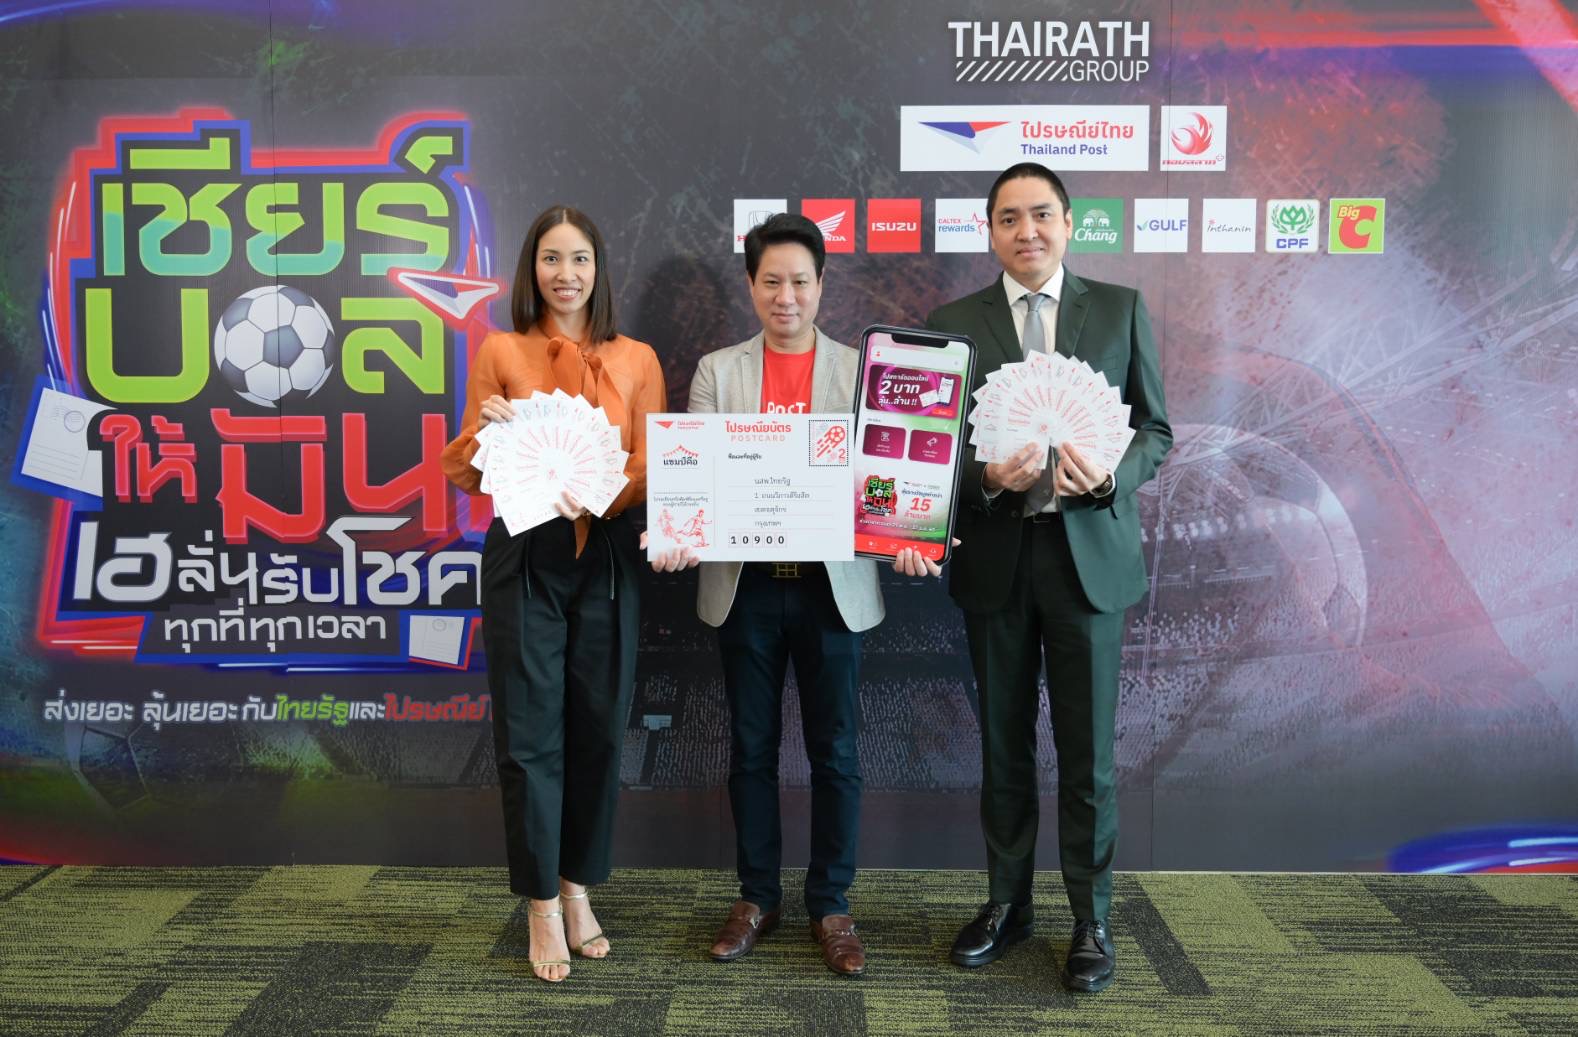 ไปรษณีย์ไทย ชวน ‘เชียร์บอลให้มัน เฮลั่นรับโชคทุกที่ทุกเวลา’ ร่วมทายผลบอลโลกปี 2022 ลุ้นโชคใหญ่รวมกว่า 15 ล้านบาท